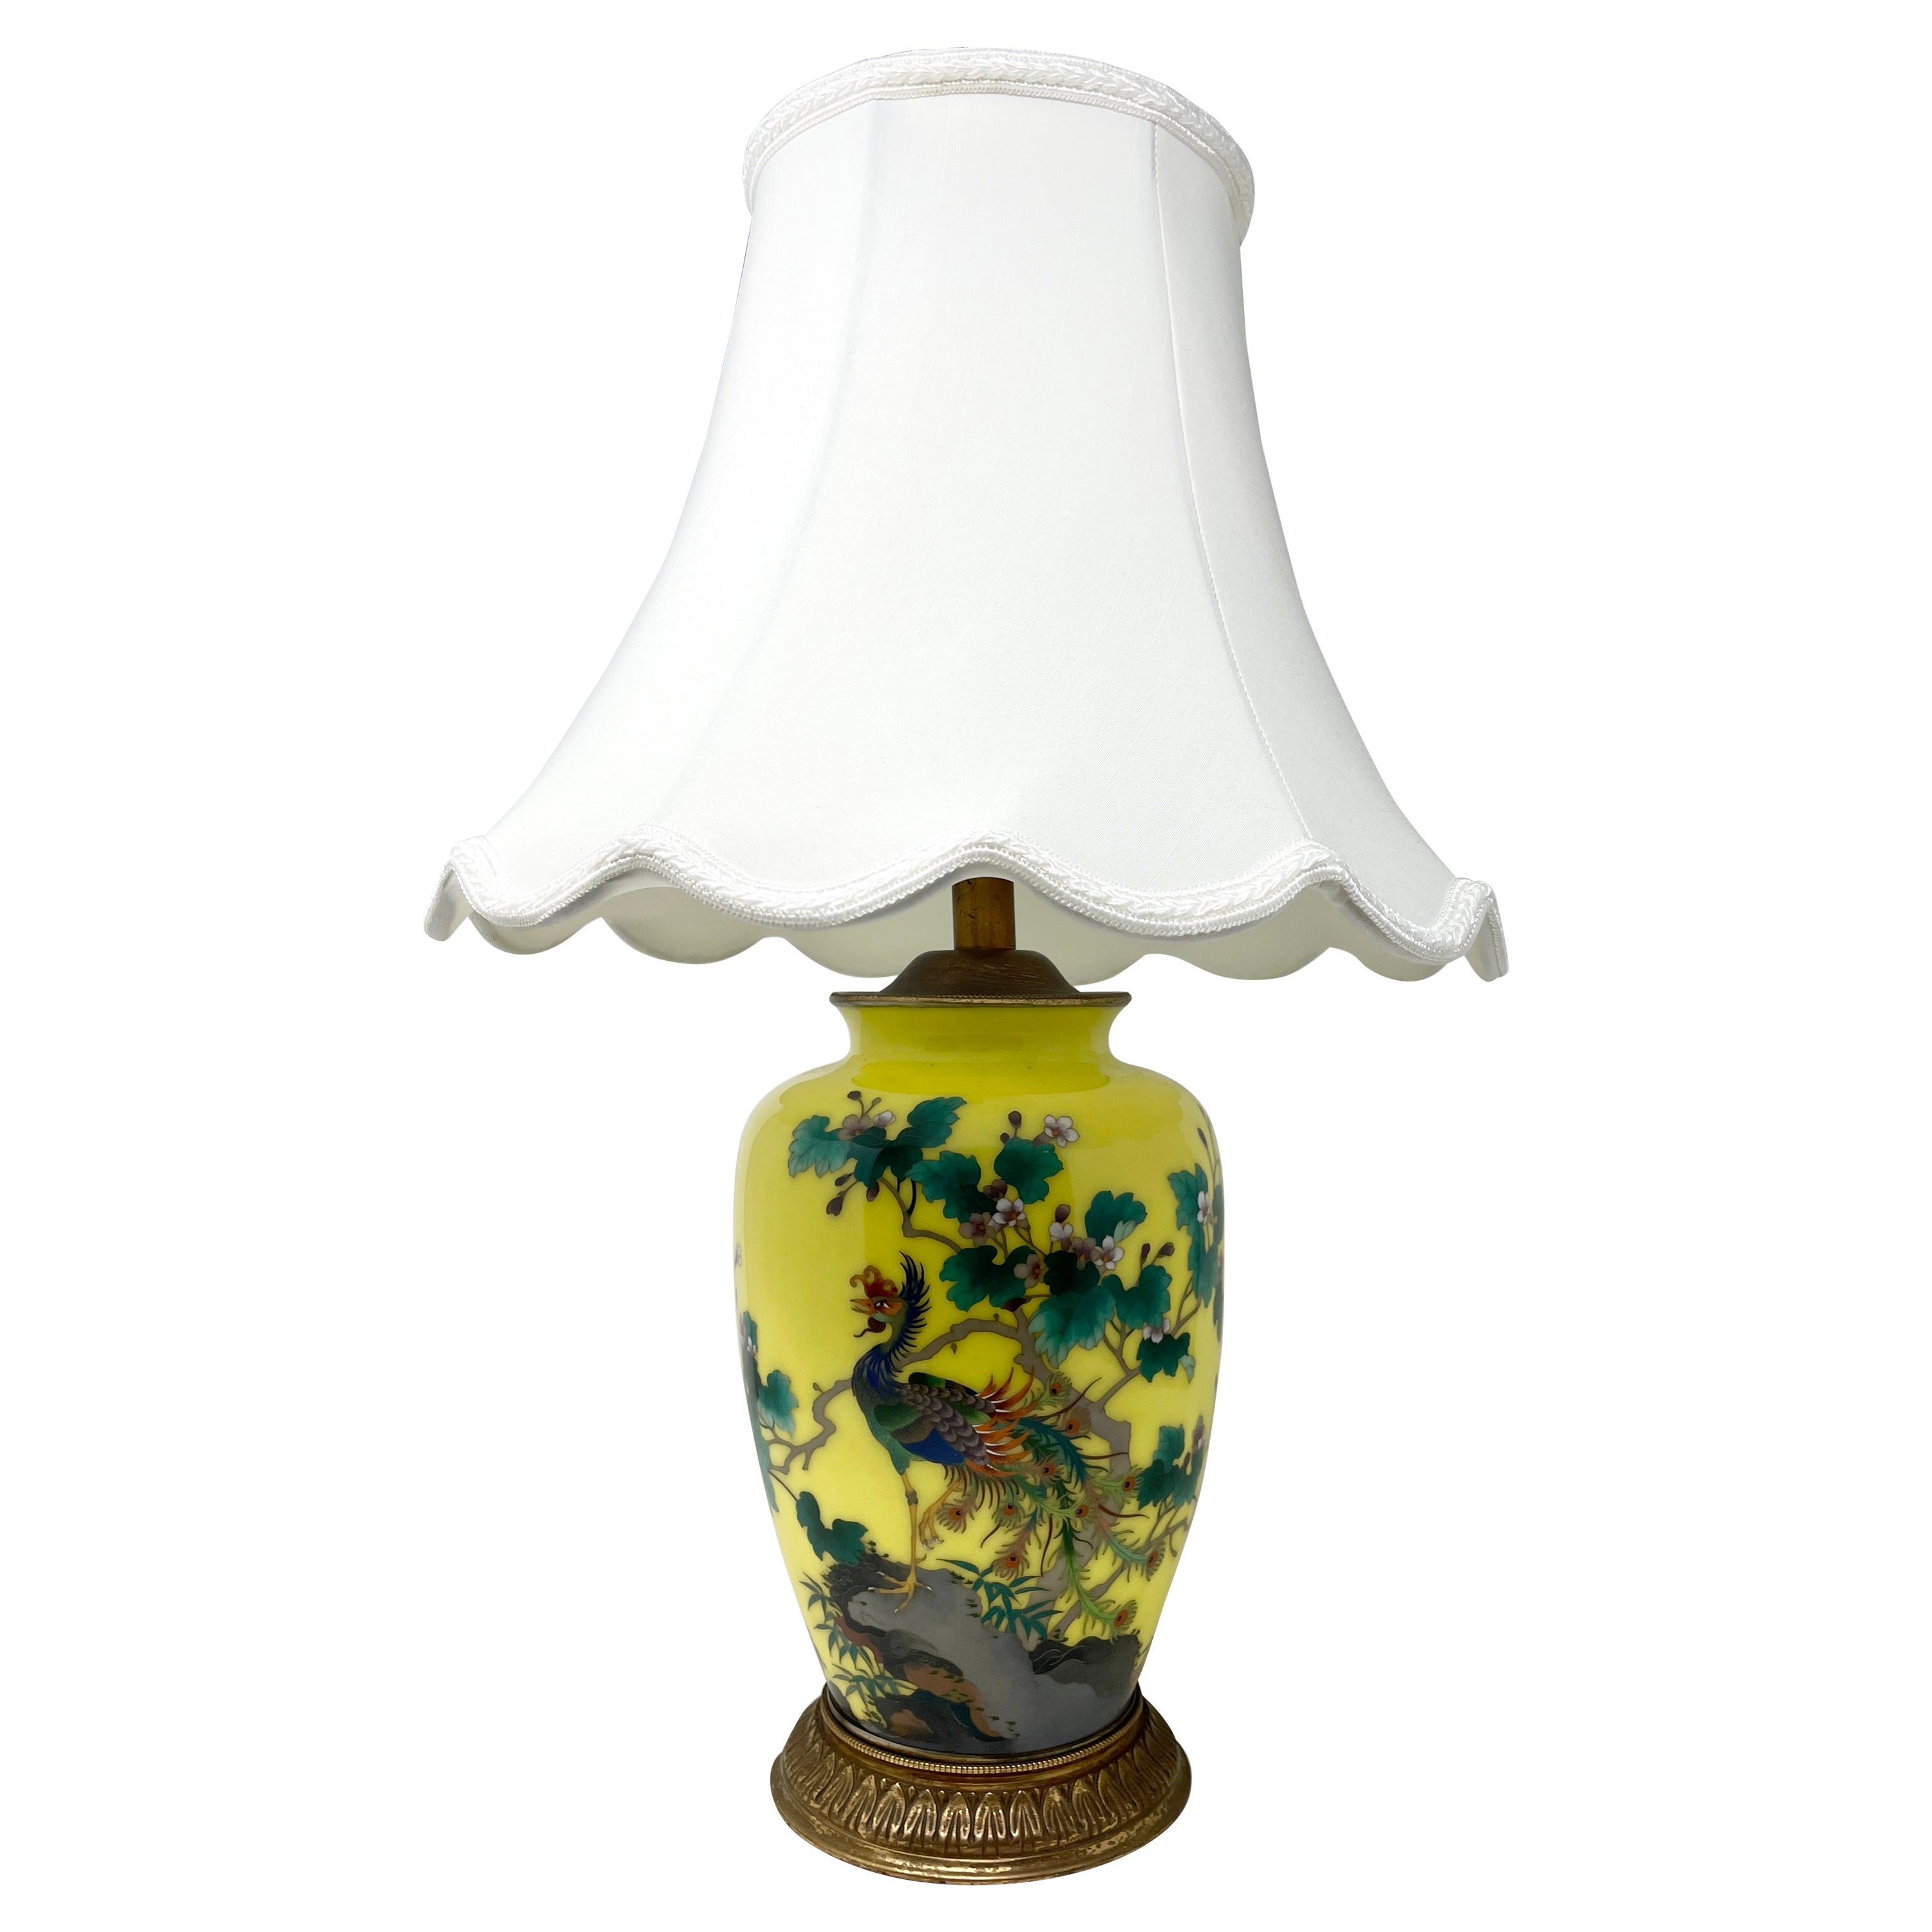 Lampe anglaise ancienne en porcelaine émaillée jaune et bronze doré, années 1900-1910. en vente